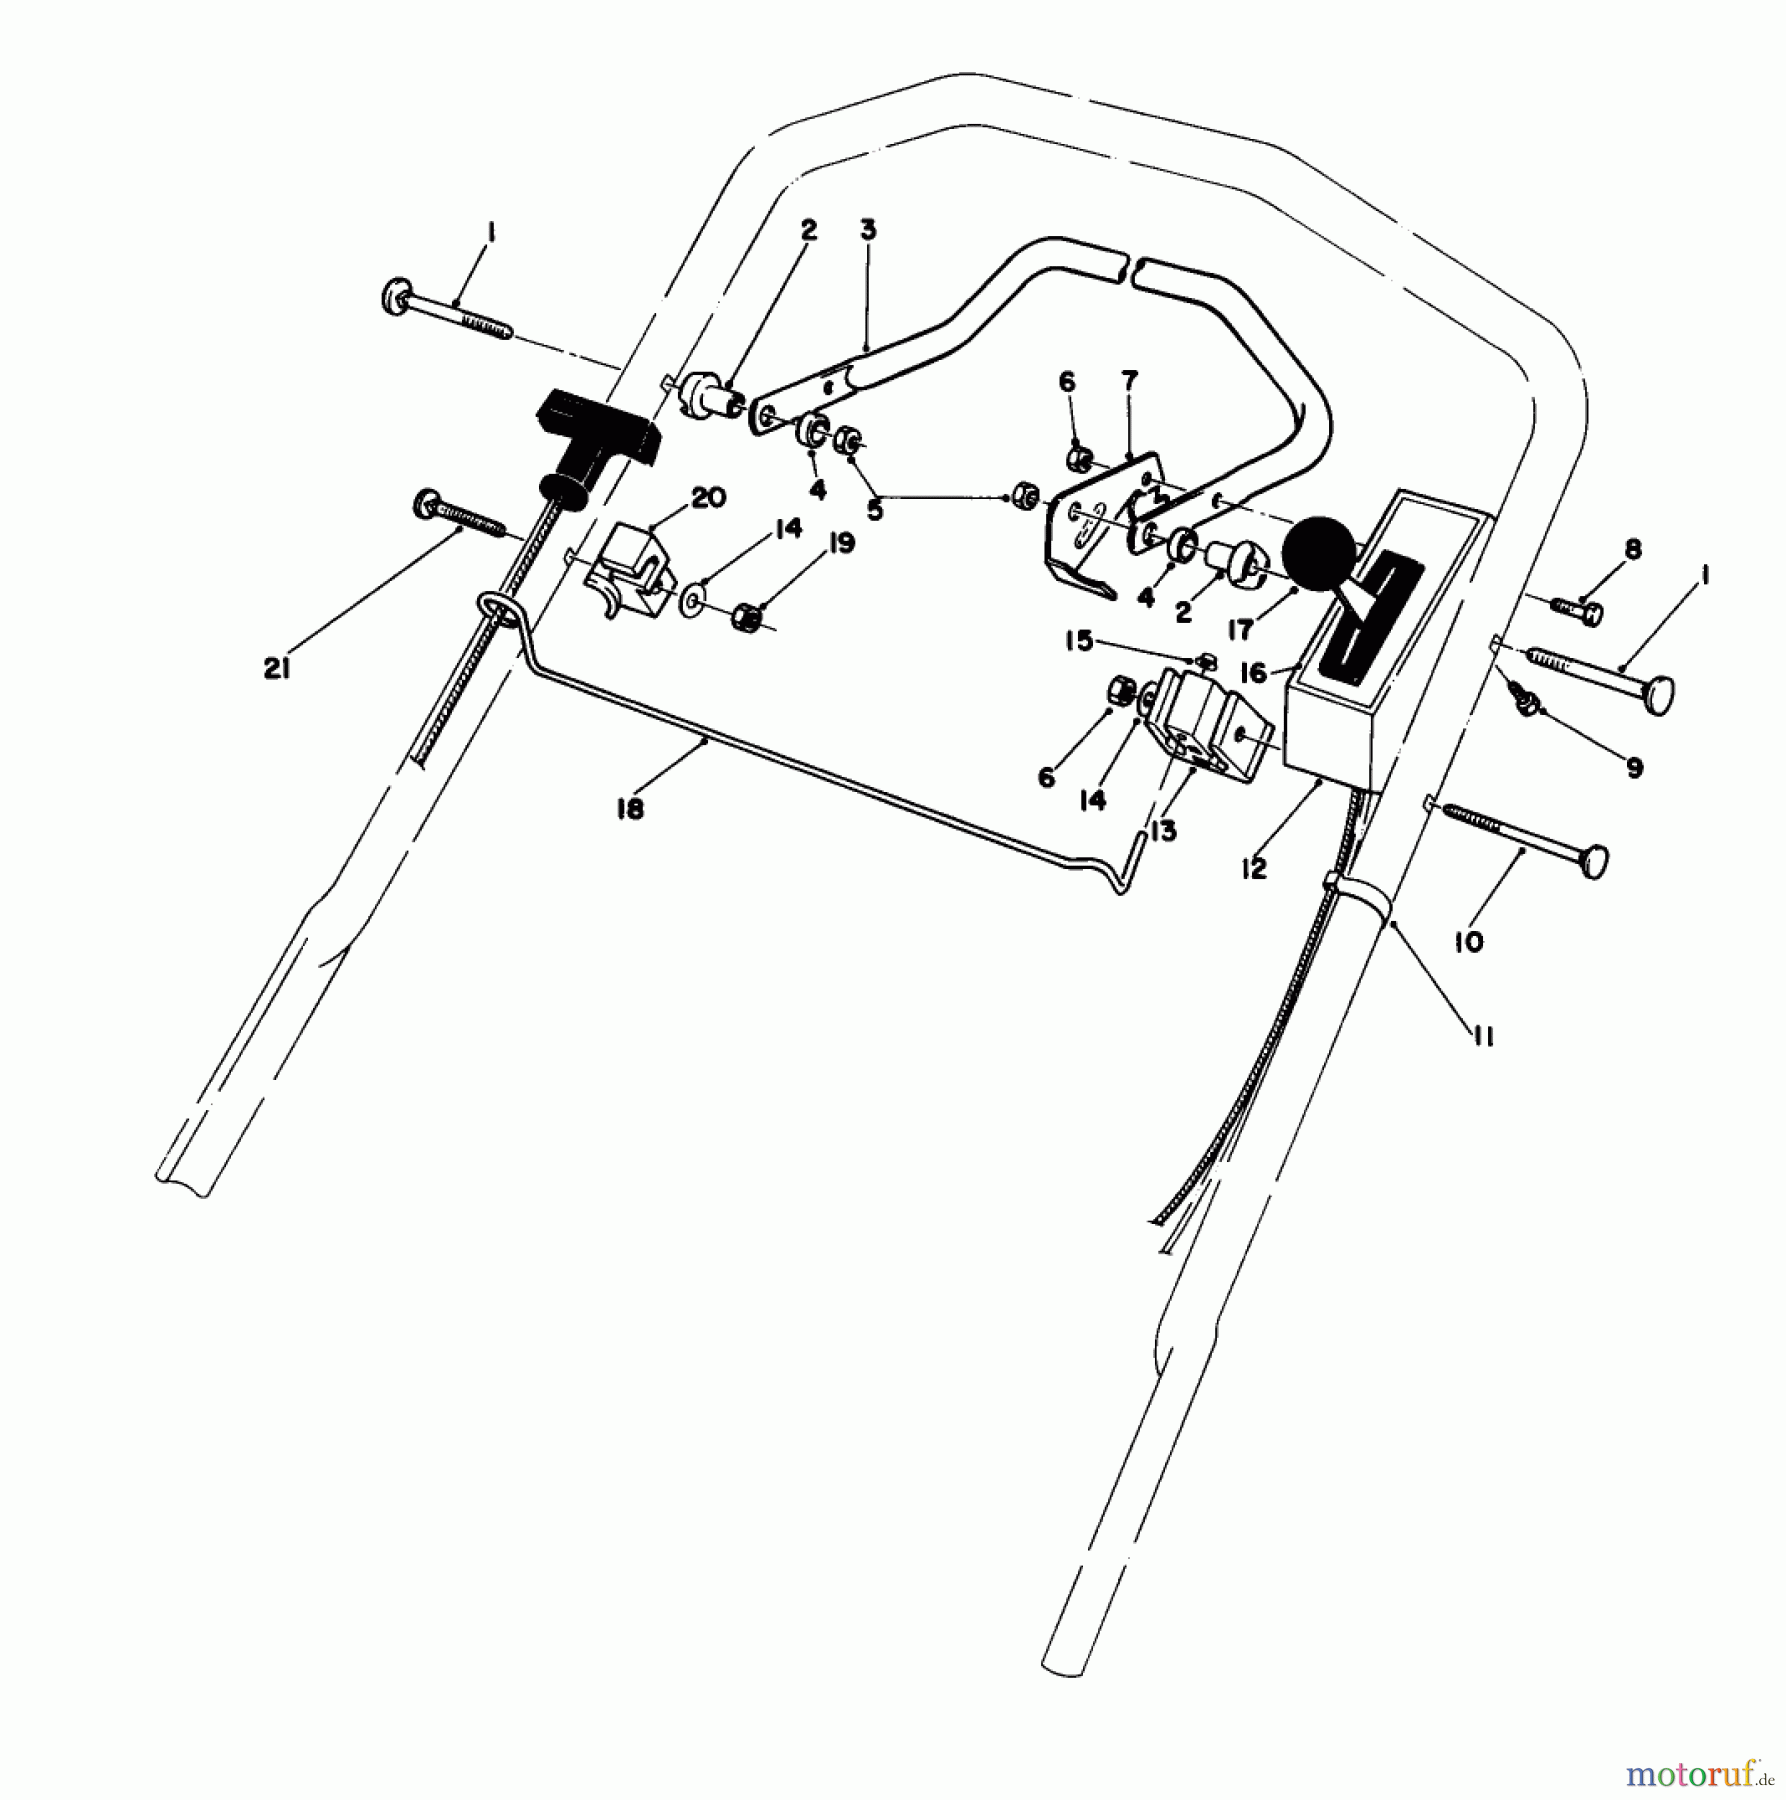  Toro Neu Mowers, Walk-Behind Seite 1 20581 - Toro Lawnmower, 1988 (8000001-8999999) CONTROL ASSEMBLY